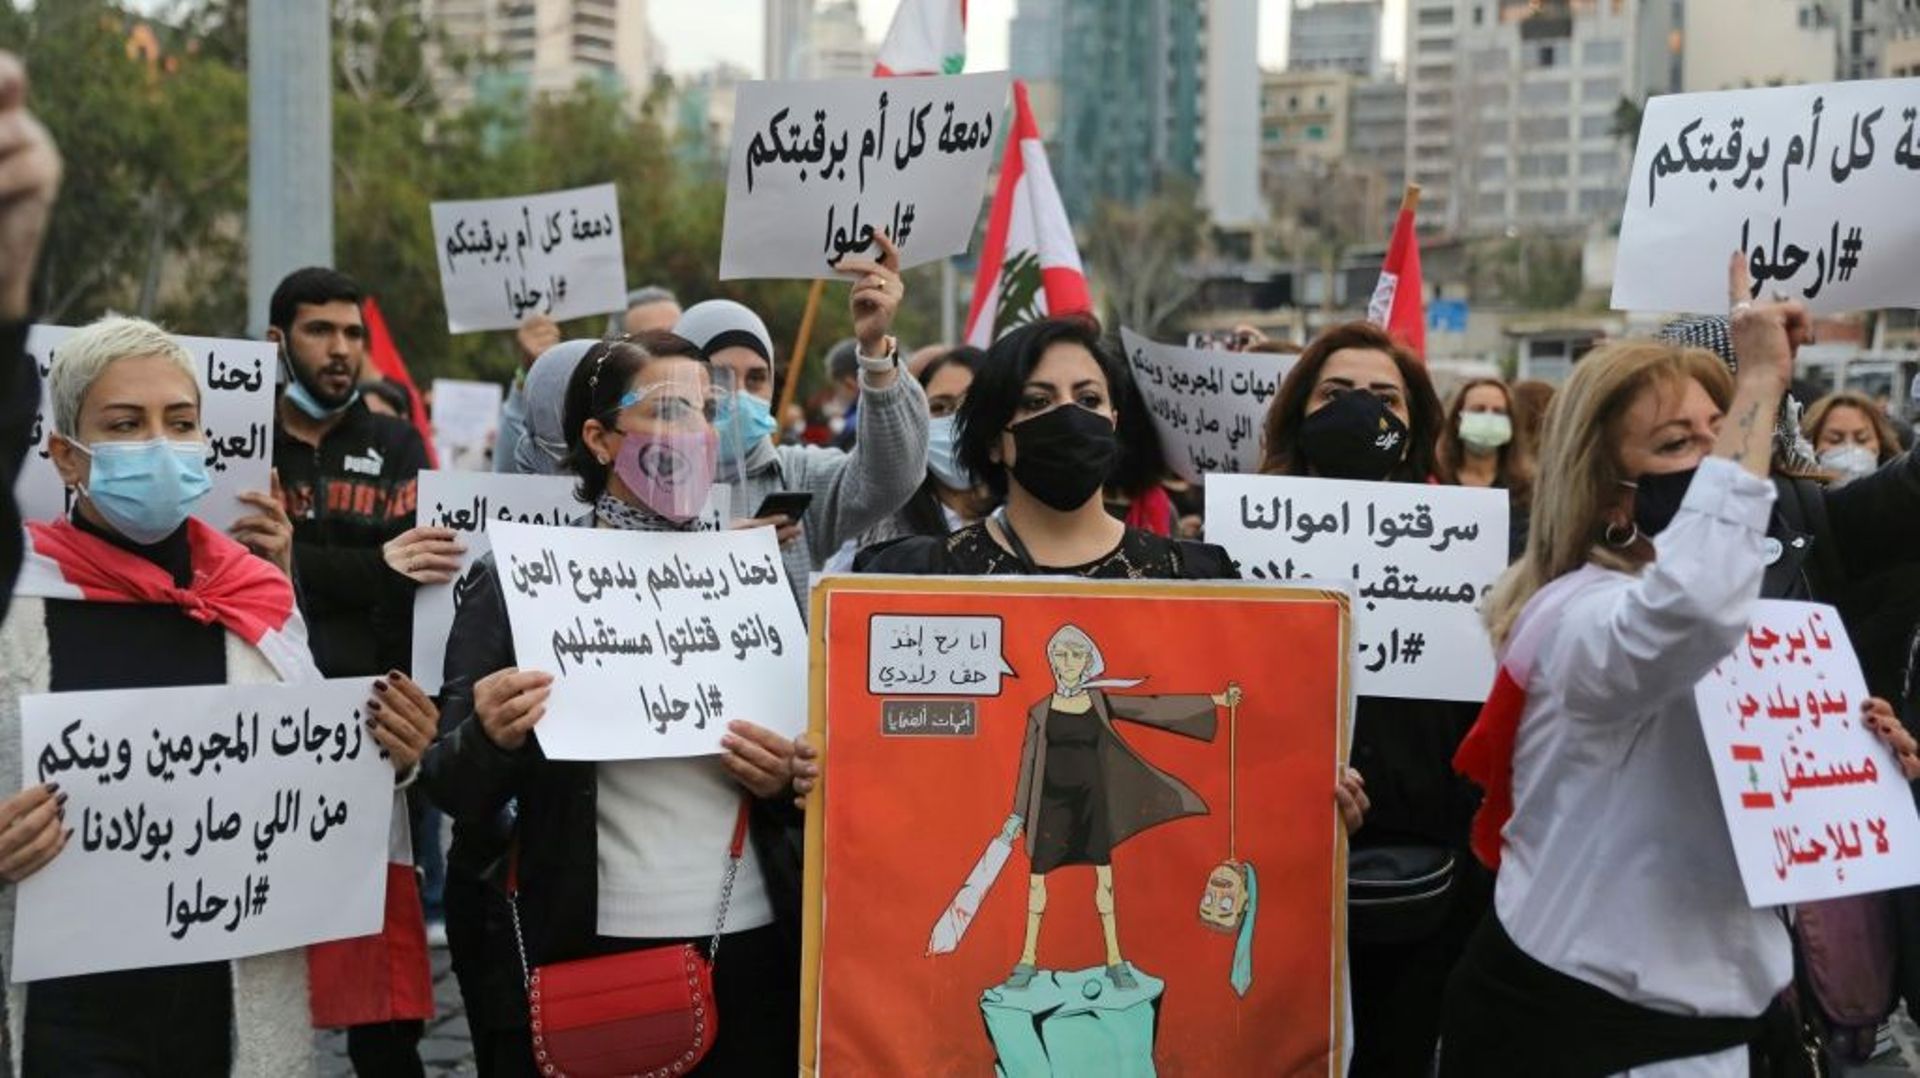 Des Libanaises manifestent à Beyrouth contre la classe dirigeante, au Liban englué dans une crise économique et politique, le 20 mars 2020